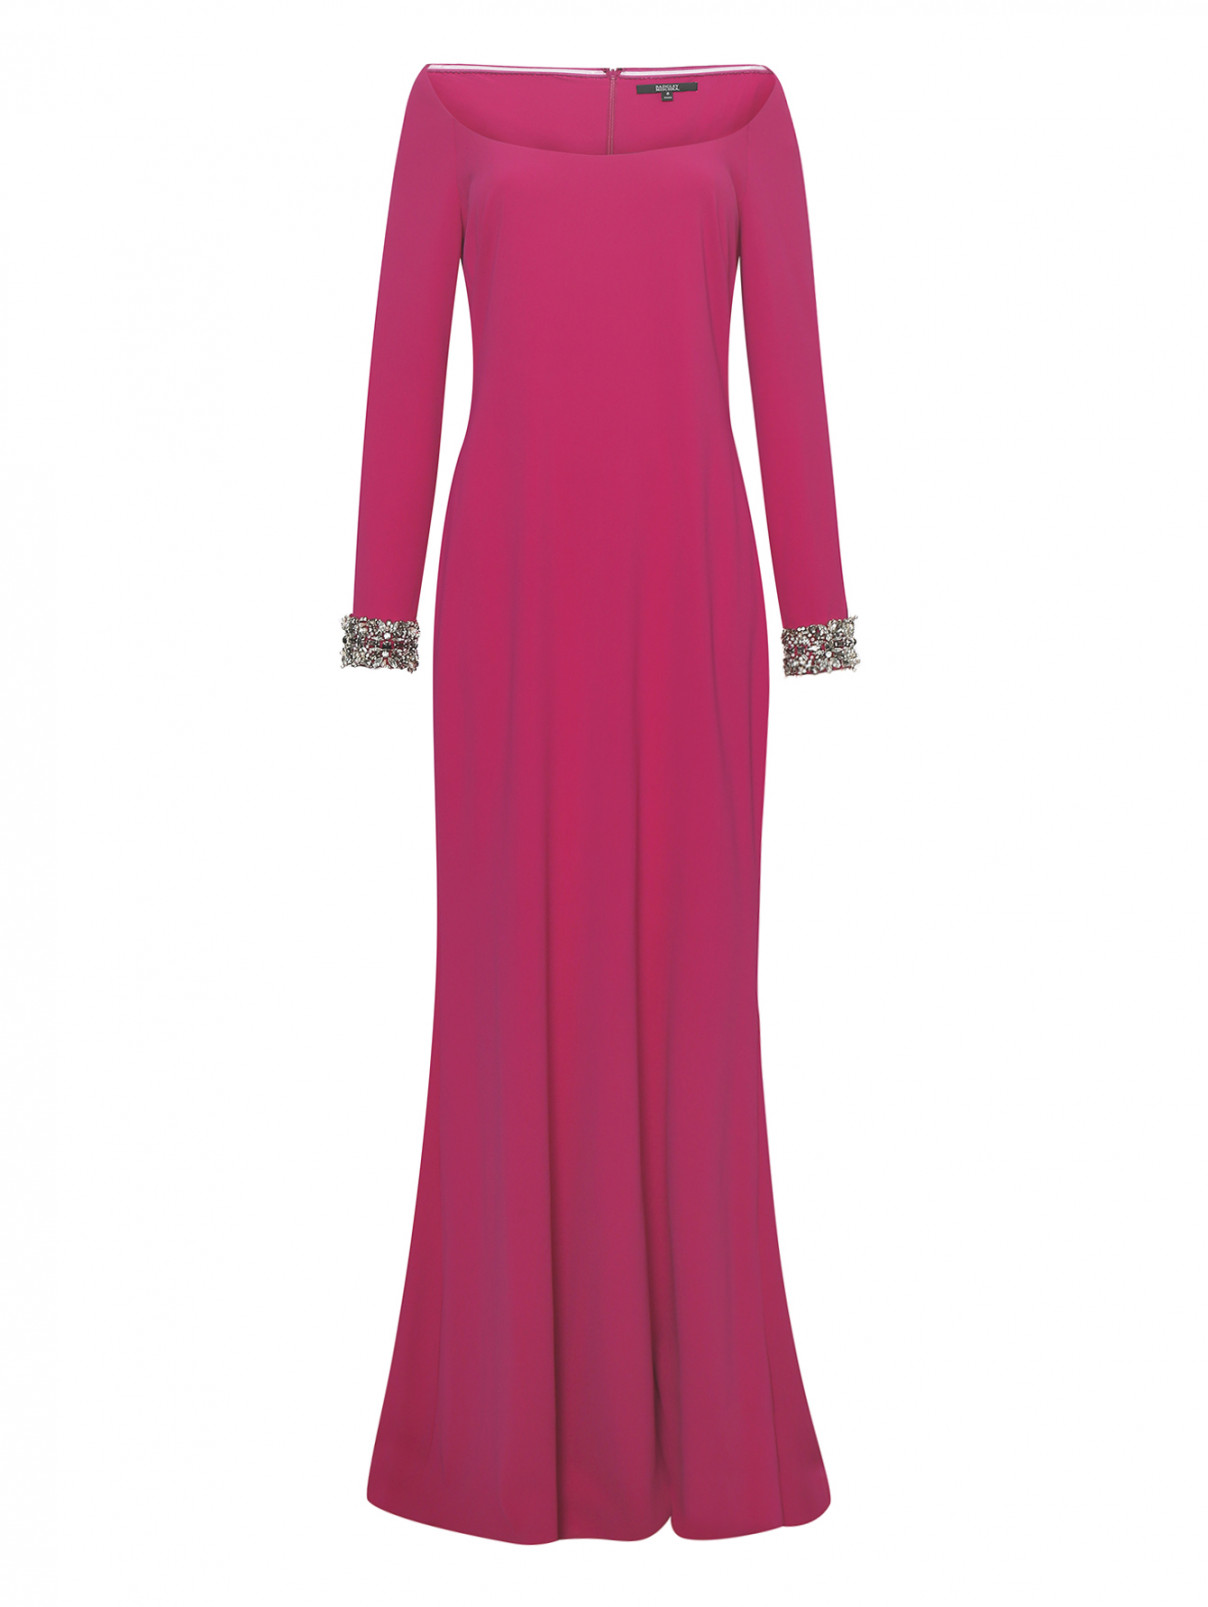 Платье в пол с открытыми плечами и декором стразами Badgley Mischka  –  Общий вид  – Цвет:  Фиолетовый